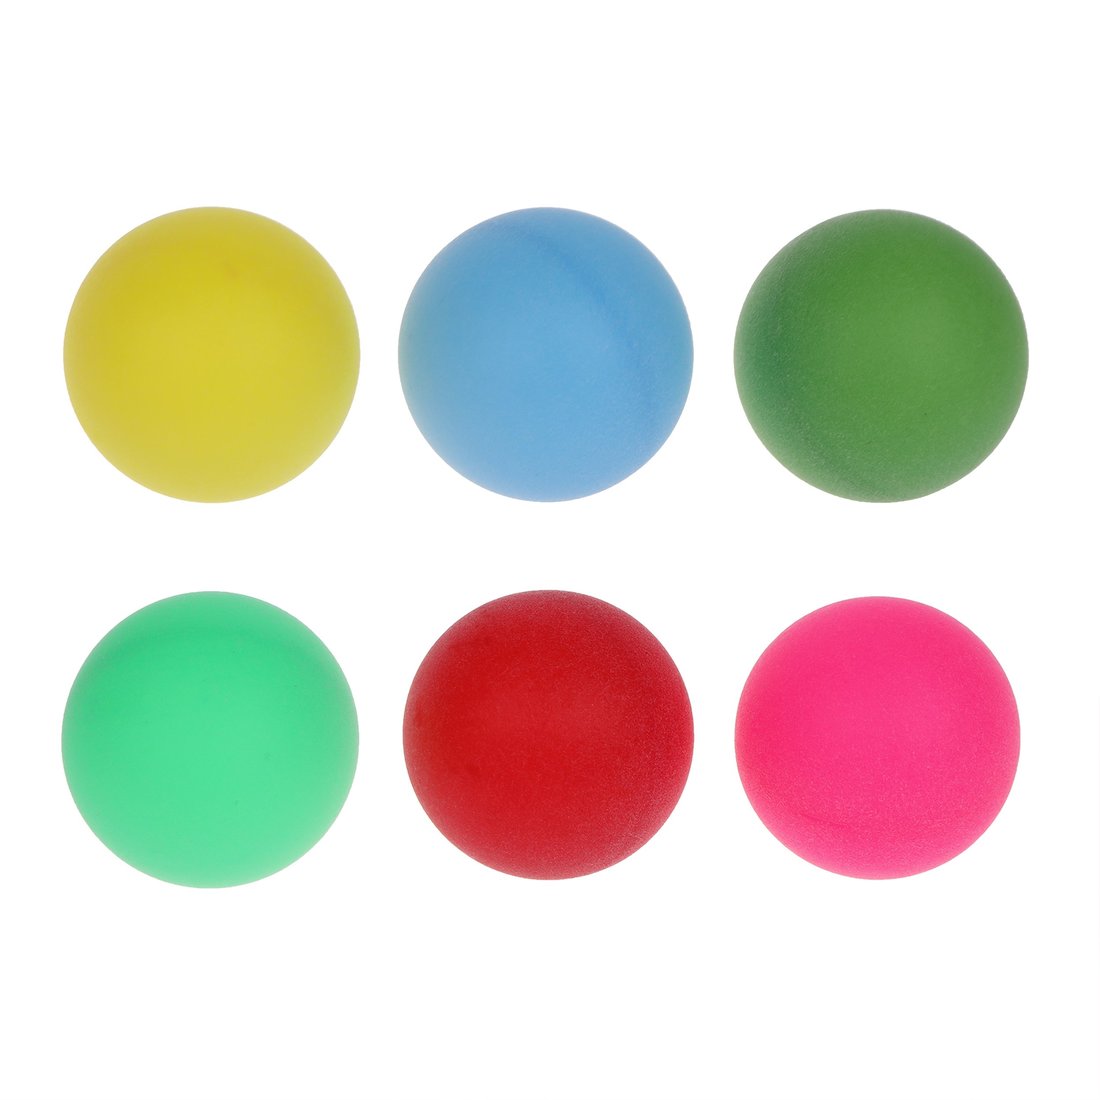 Шарики для настольного тенниса 636179 цветные в наборе 6шт в пакете - Бугульма 